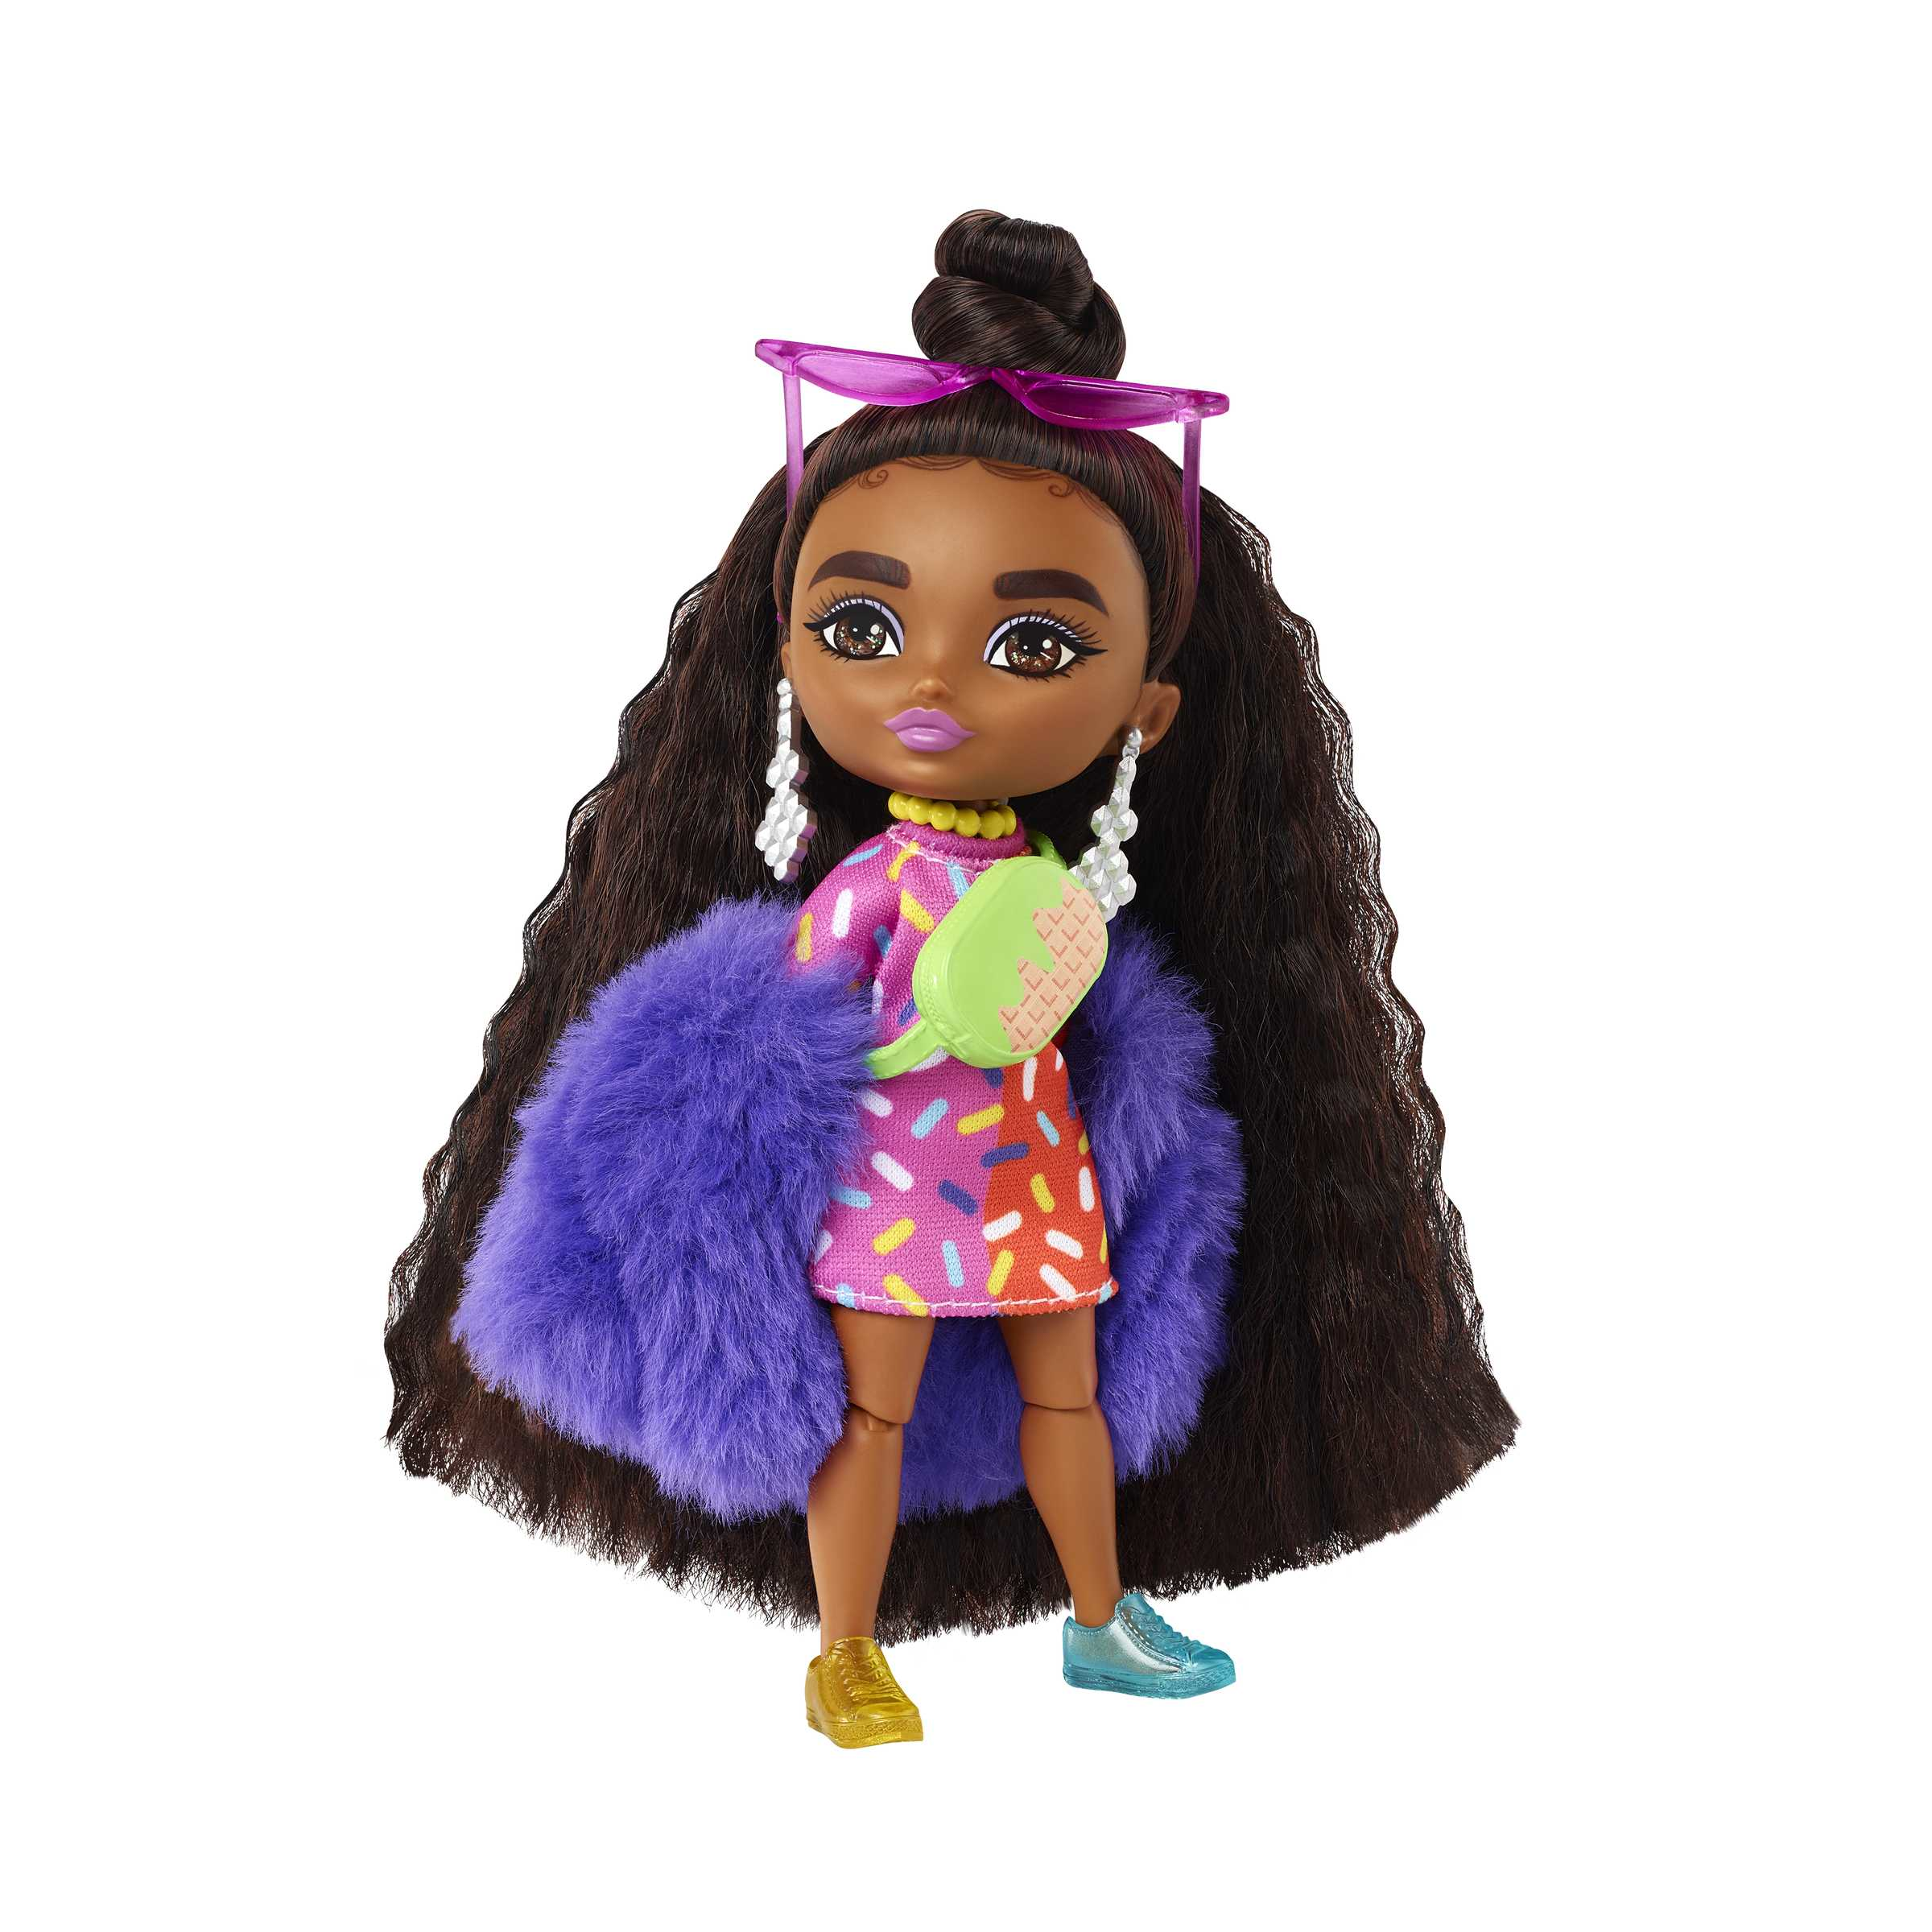 Barbie-extra minis mini bambola articolata con vestito rosa e rosso, pelliccia viola e morbidi capelli ricci, giocattolo per bambini 3+ anni, hgp63 - Barbie